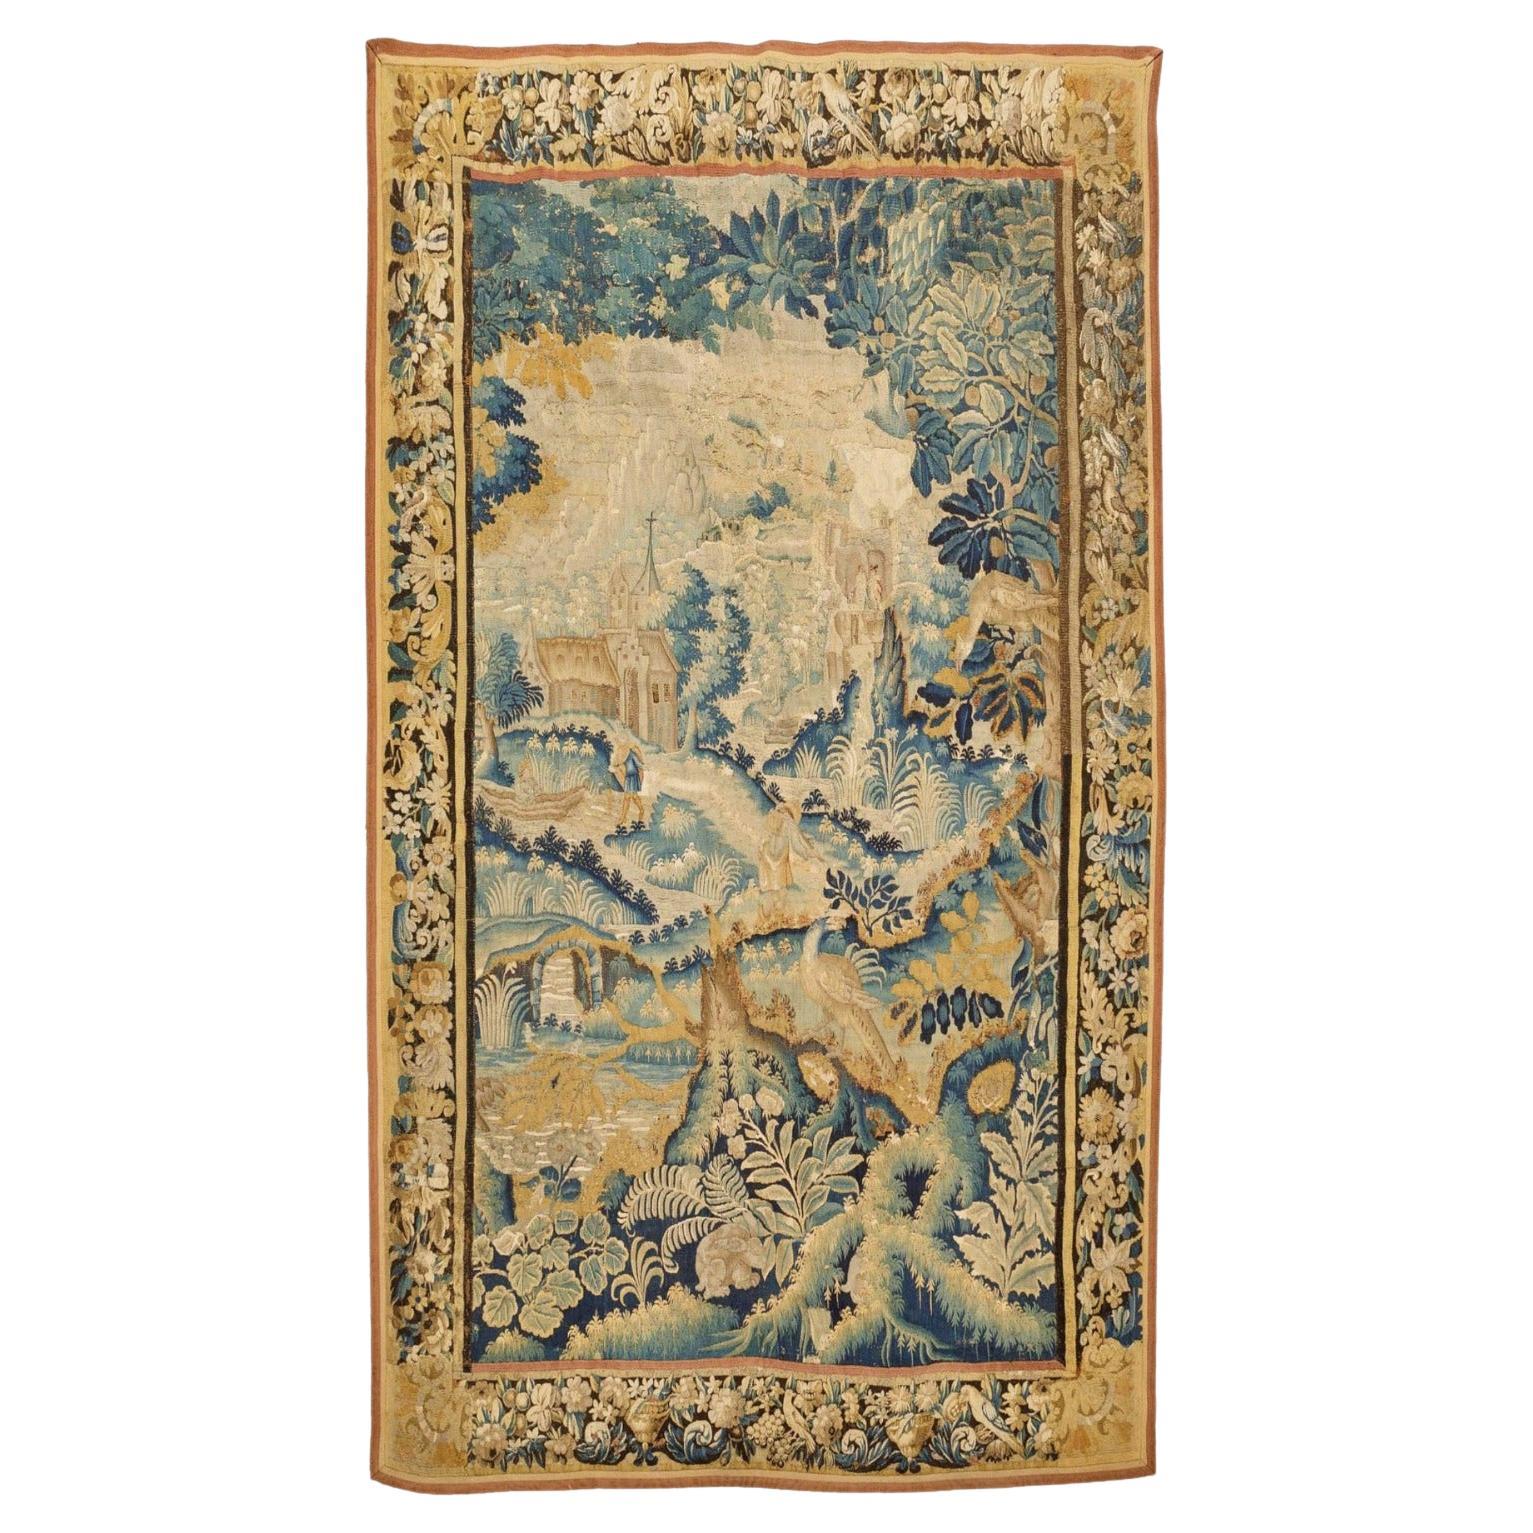 Magnifique tapisserie Flemish, 17ème siècle